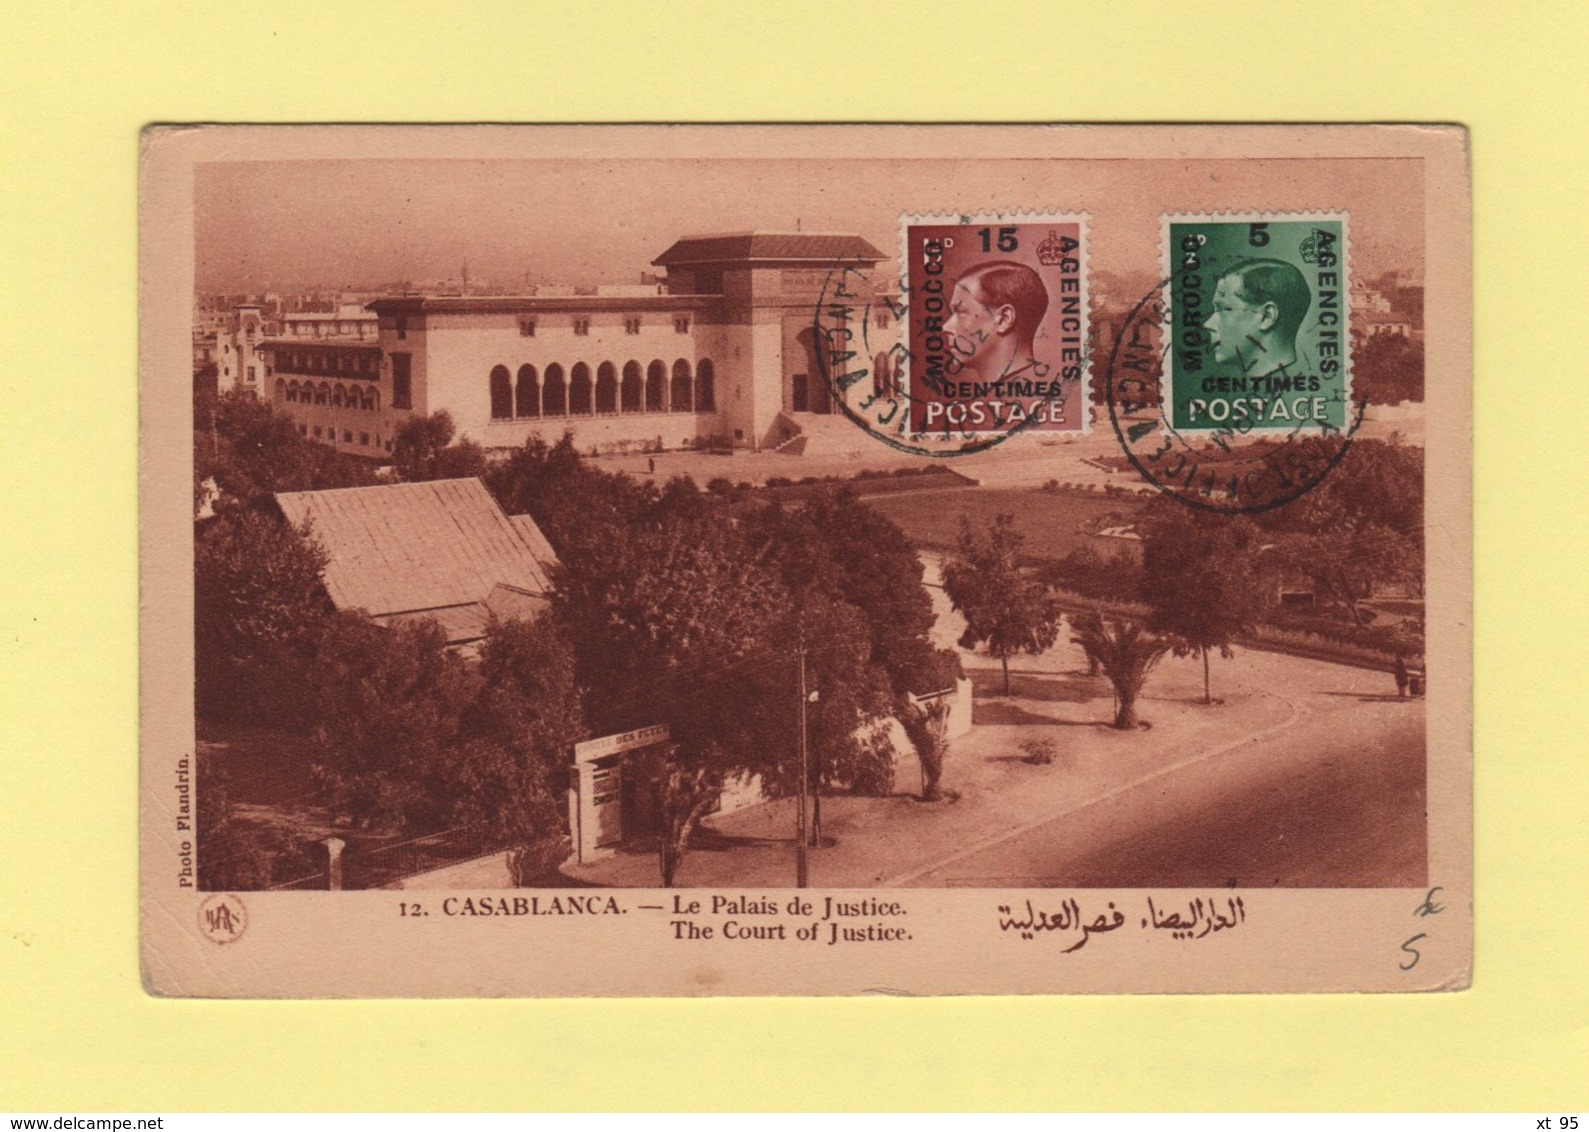 Morocco - Maroc - Casablanca Post Office - 1937 - Postämter In Marokko/Tanger (...-1958)